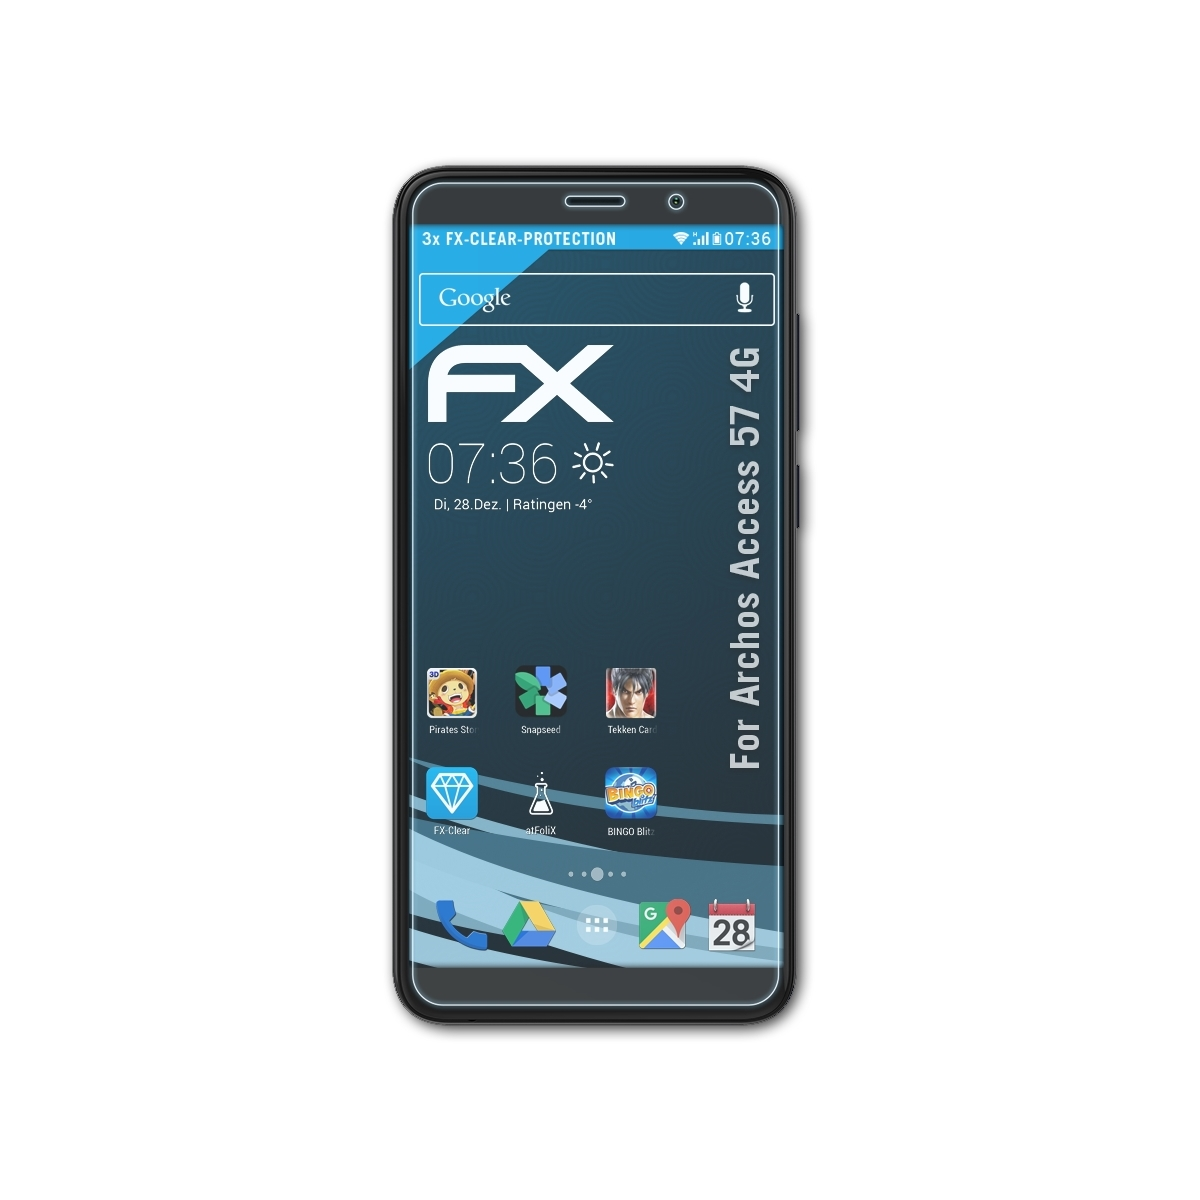 ATFOLIX 3x FX-Clear Displayschutz(für Archos 57 4G) Access